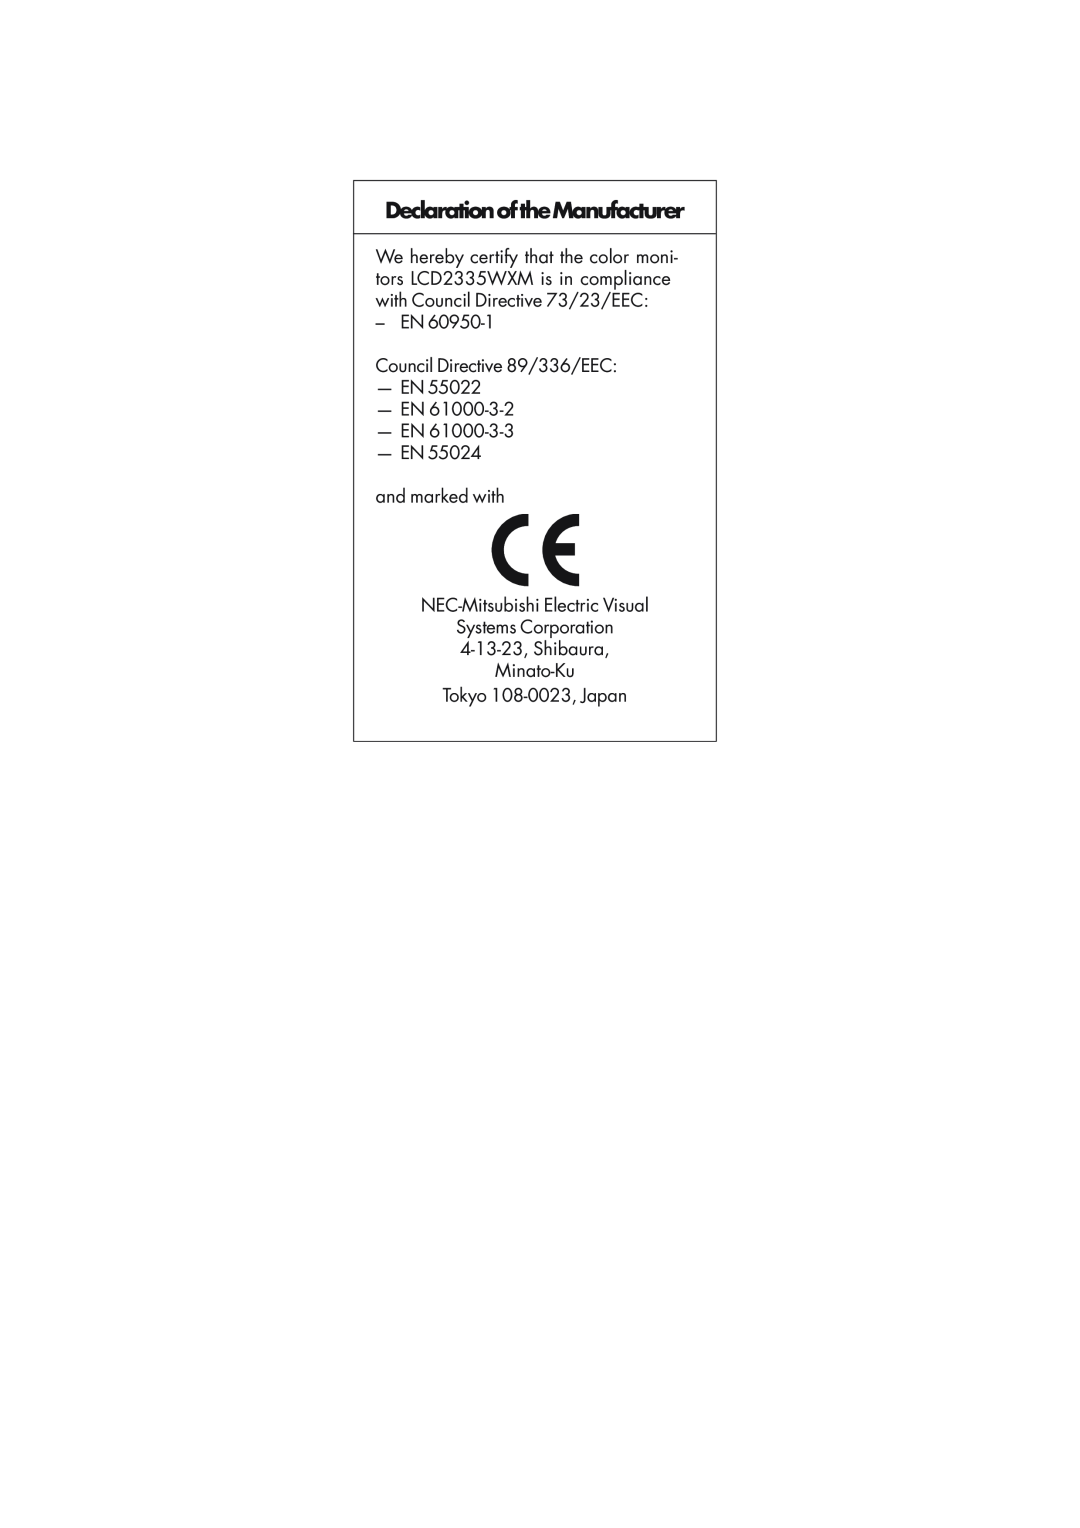 NEC L234GC, LCD2335WXM DeclarationoftheManufacturer, EN Council Directive 89/336/EEC -EN -EN -EN -EN, Tokyo 108-0023,Japan 